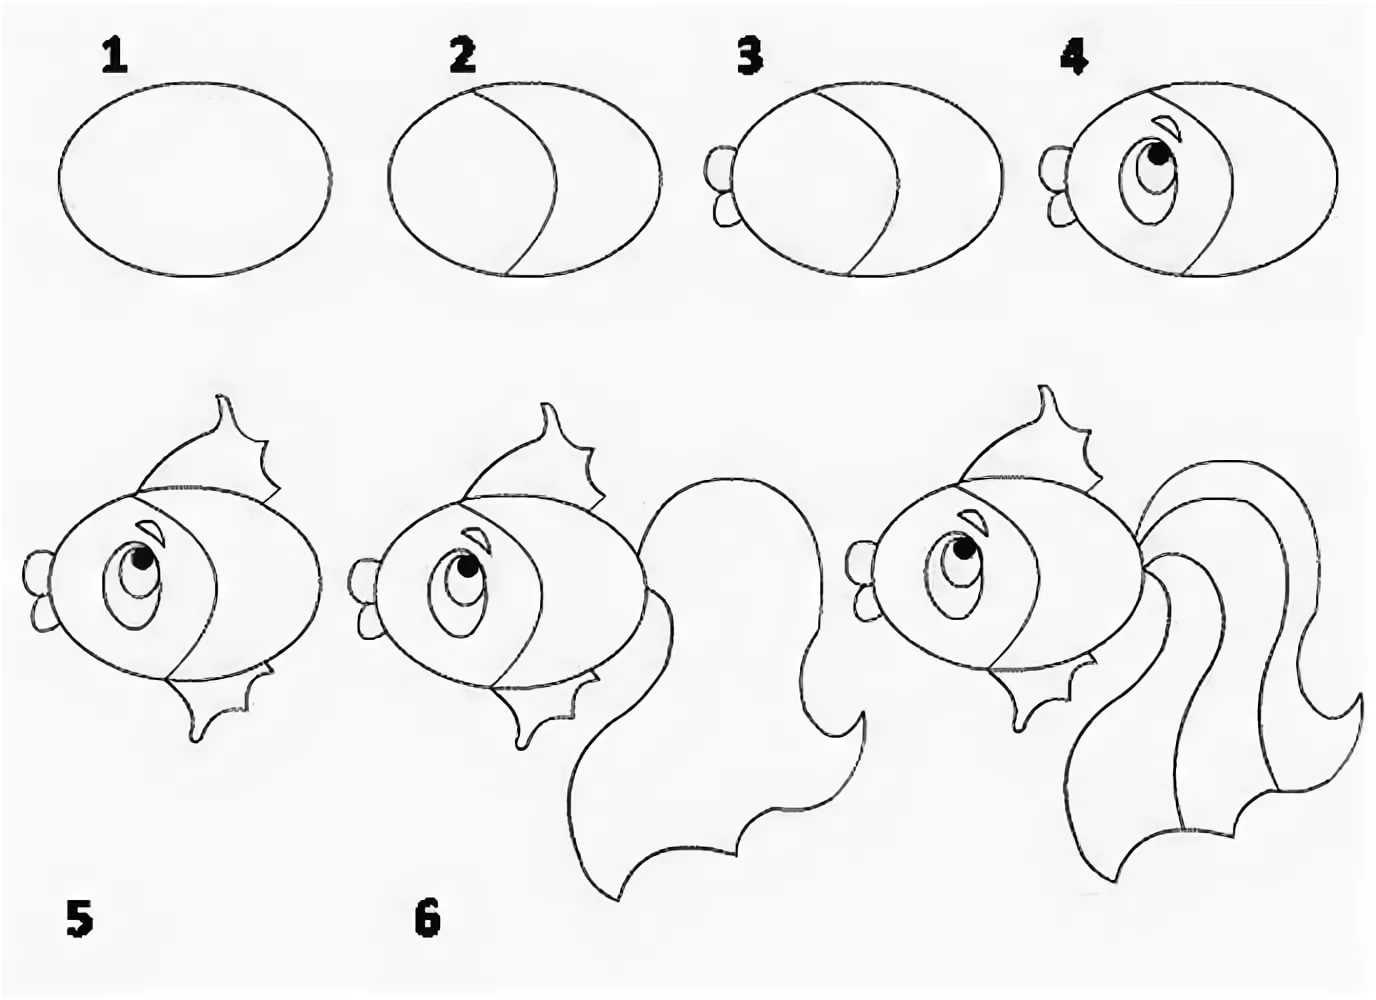 Как нарисовать рыбку пошагово: мастер-класс для детей по созданию рисунка фломастером и карандашом